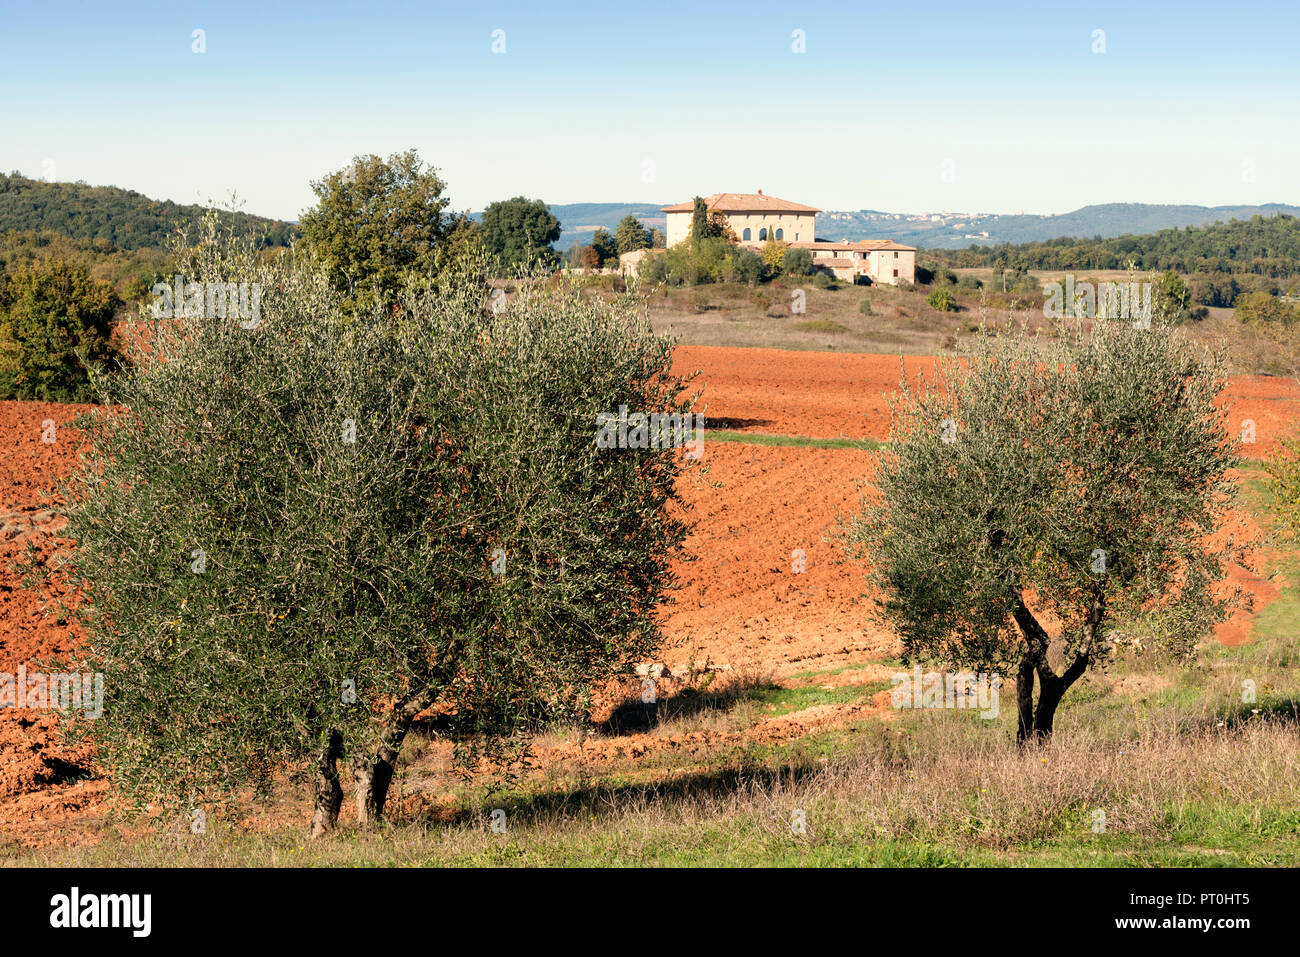 Italia, Toscana, provincia Siena, campo y olivos. Foto de stock